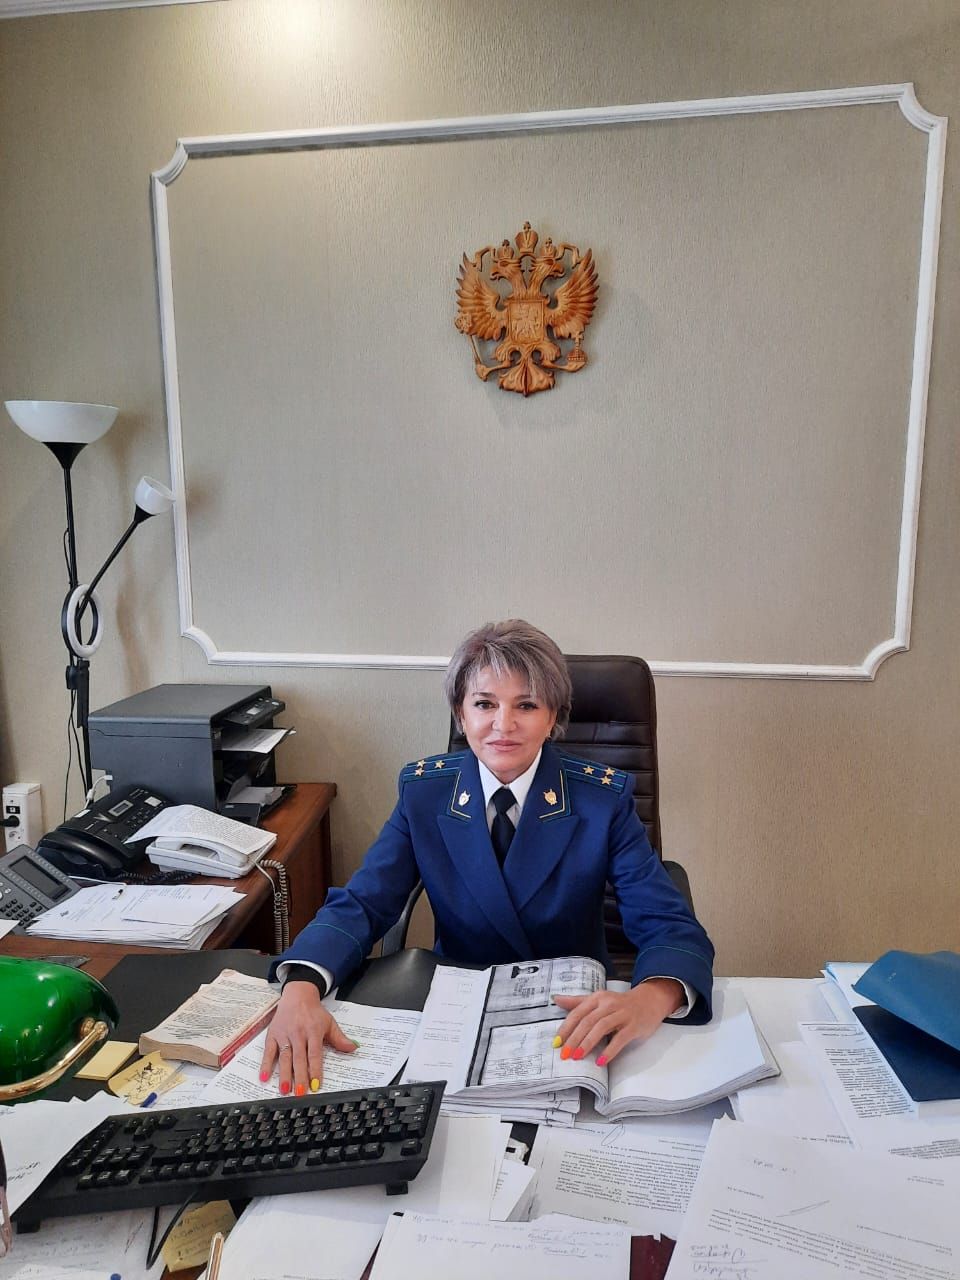 Помощник городского прокурора Гульнара Вазанова рассказала о карьерном пути, причинах детской преступности и защите людей